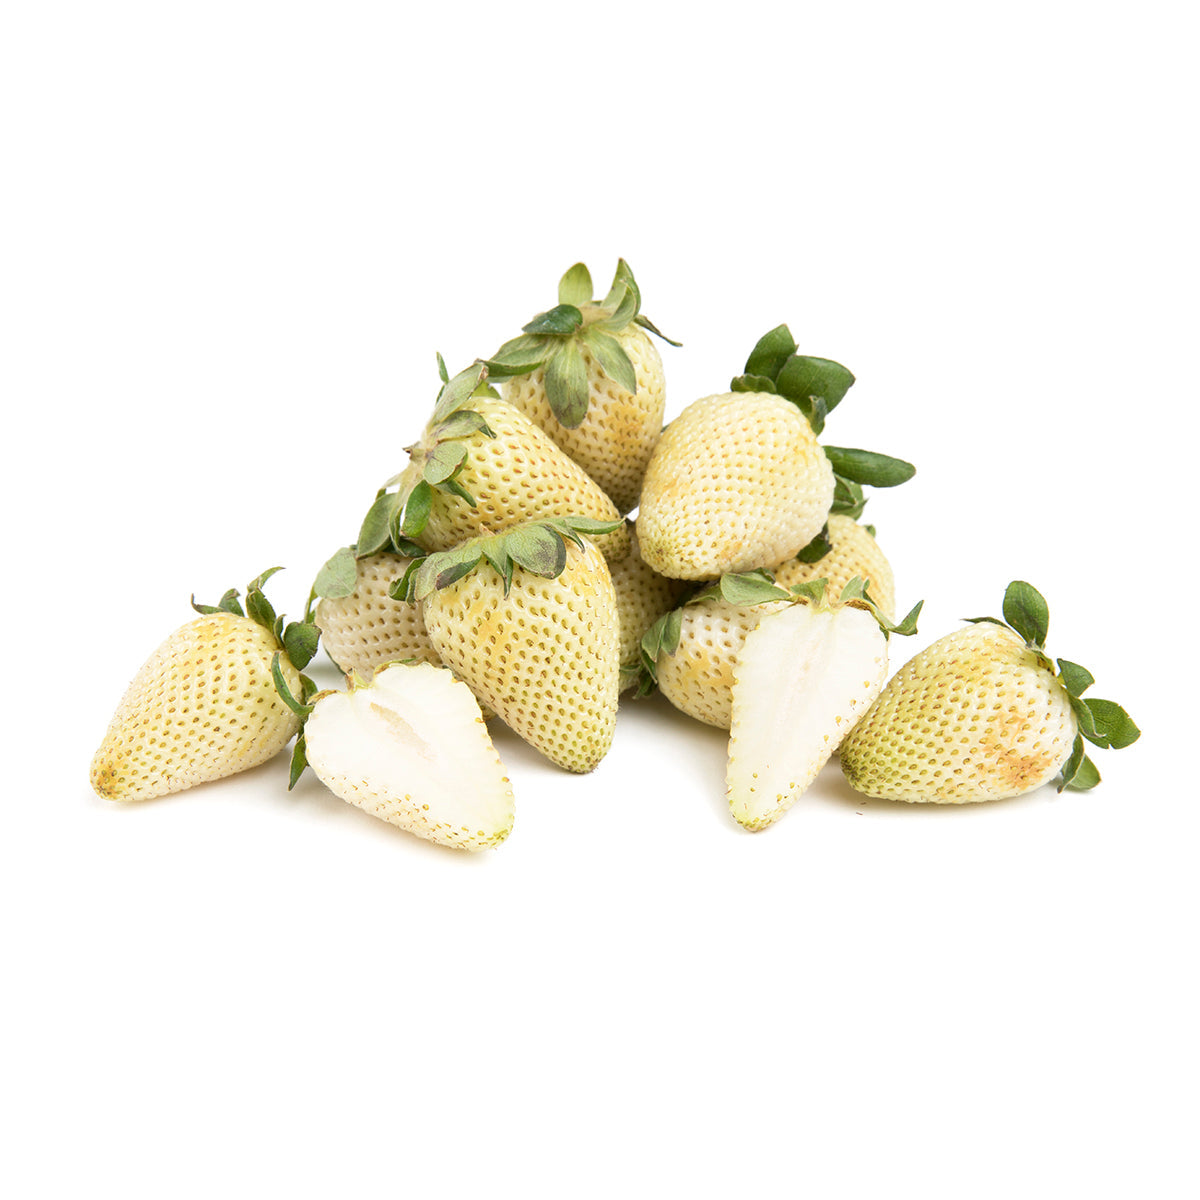 BoxNCase Green Unripe Strawberries 1 lb